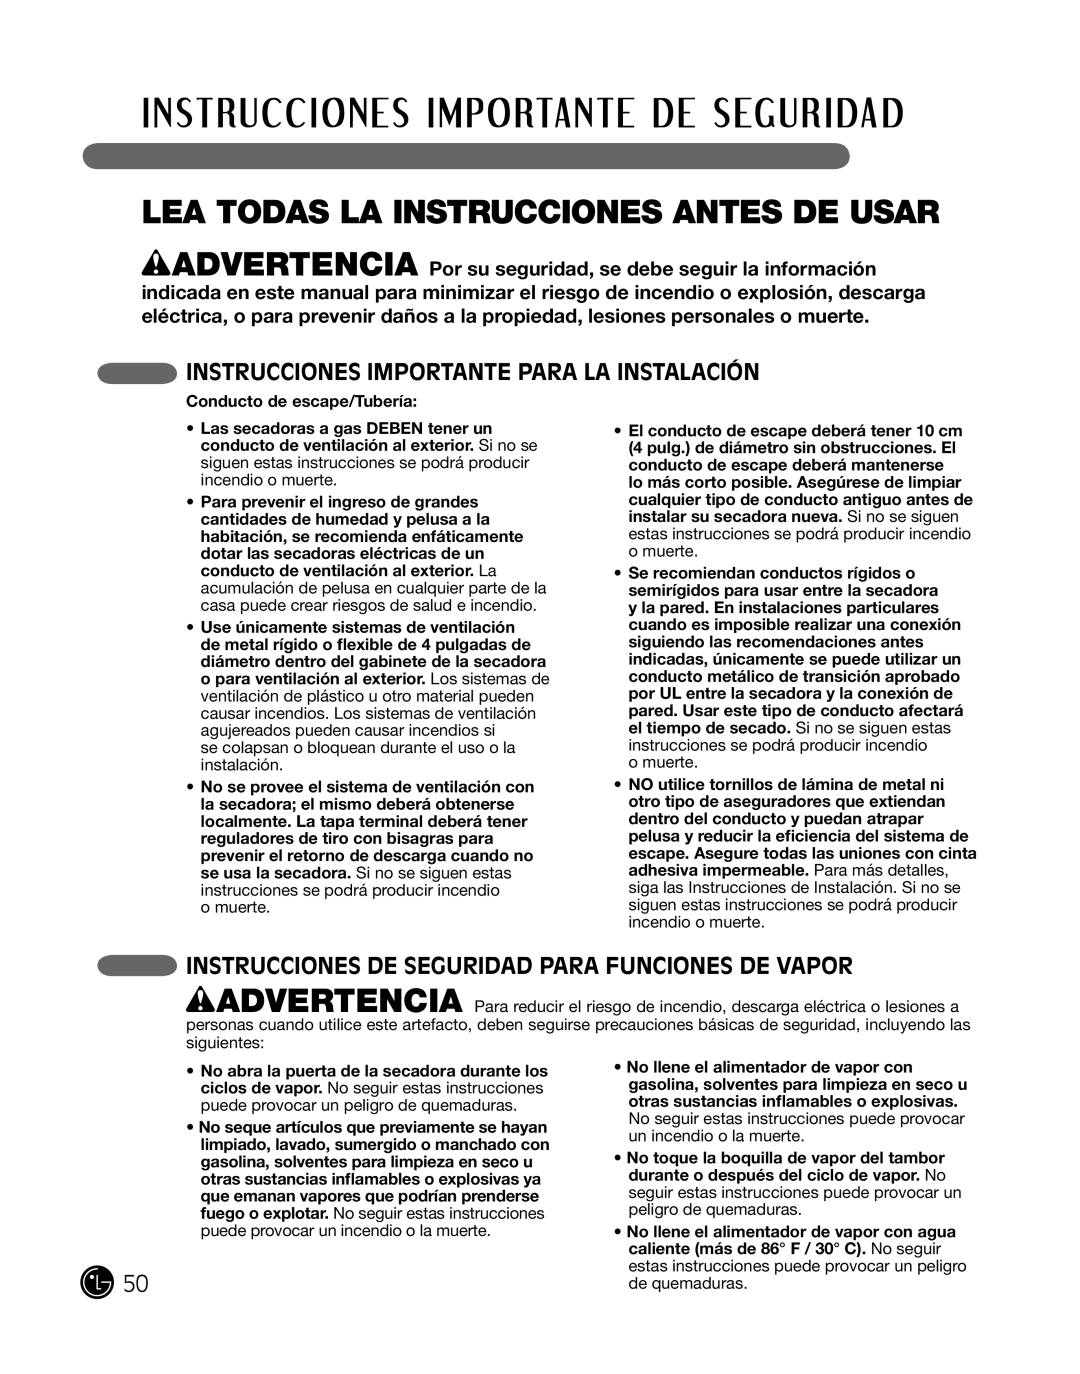 LG Electronics P154 manual inSTruccioneS imPorTanTe Para la inSTalaciÓn, inSTruccioneS de Seguridad Para FuncioneS de vaPor 